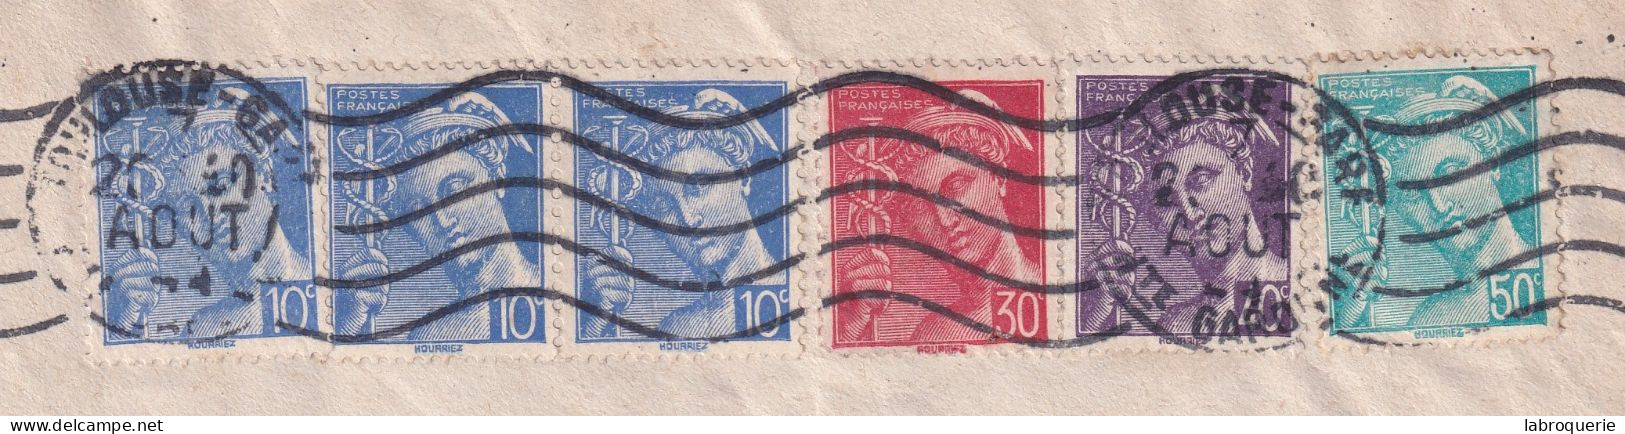 FRA - AFFRANCHISSEMENT "MERCURE" - TARIF DU 5/1/1942 - TOULOUSE > MARSEILLE - Tarifs Postaux